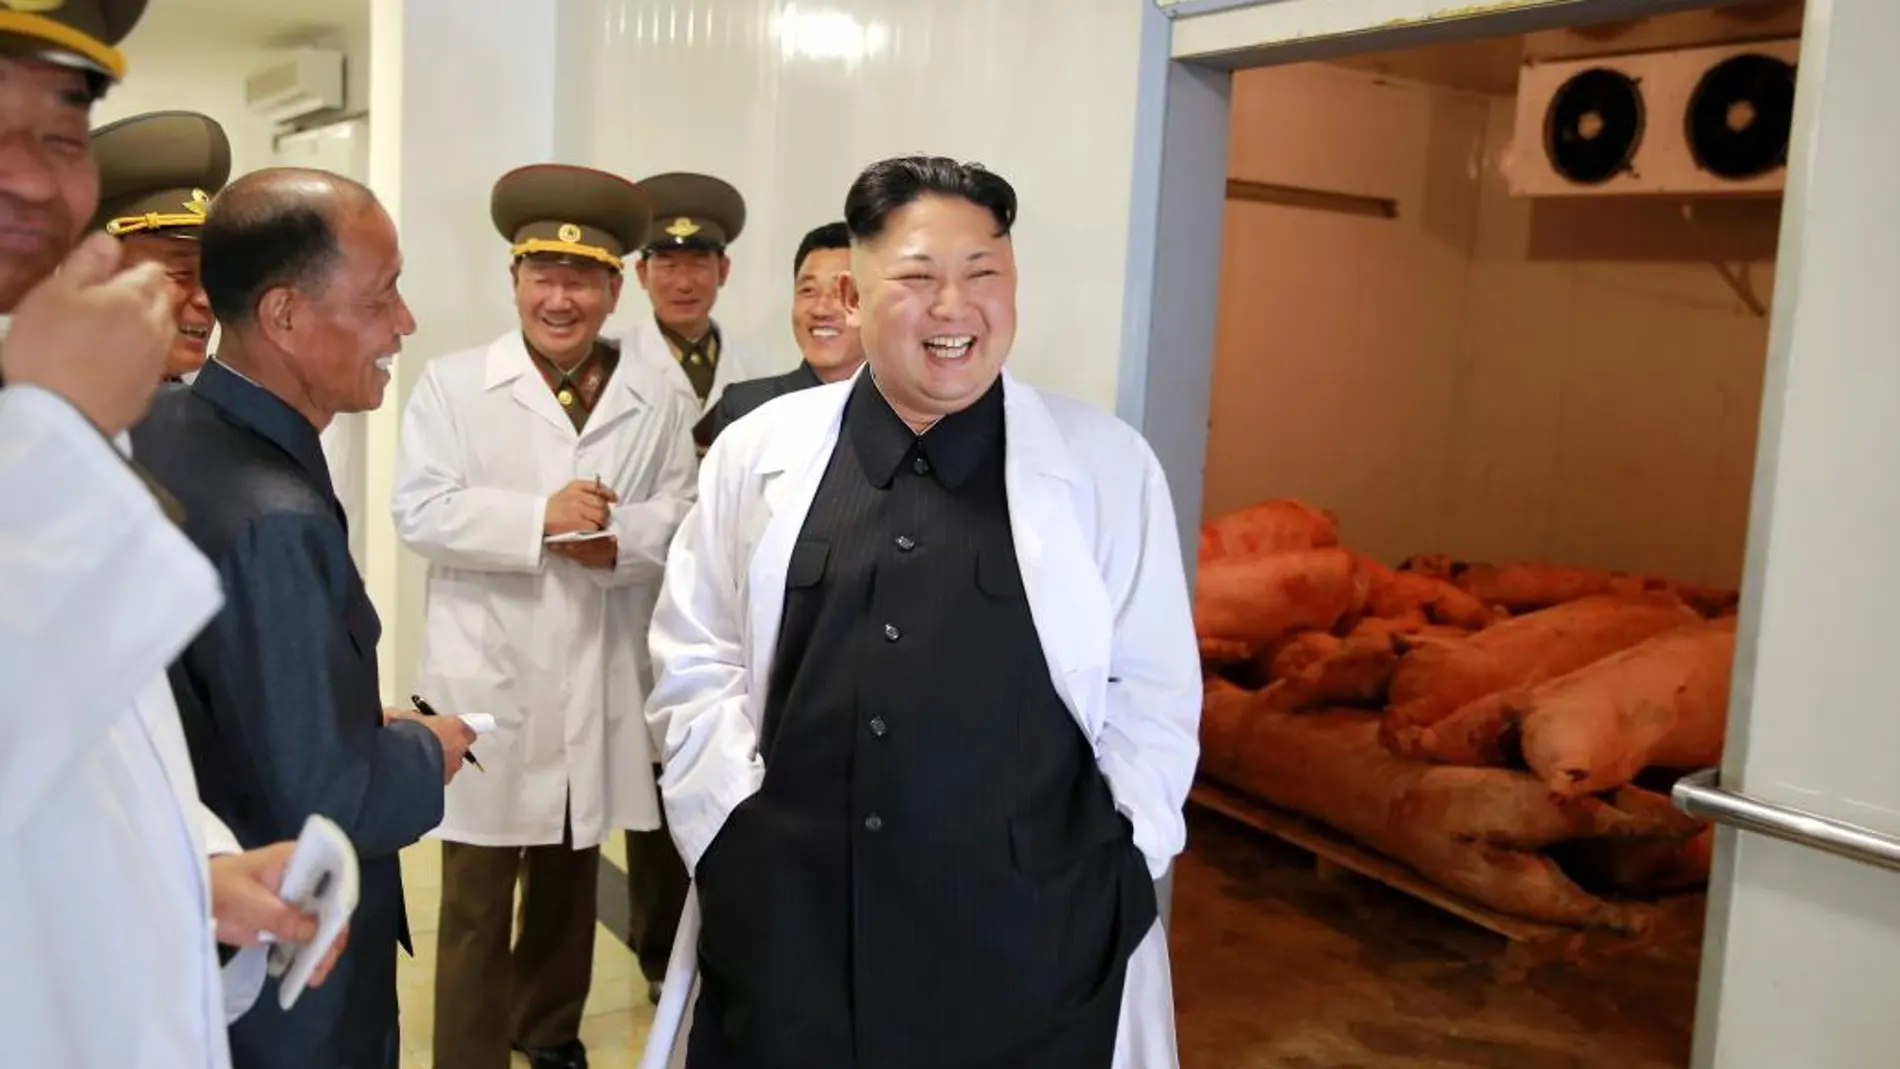 El líder norcoreano, Kim Jong Un, visita una granja de cerdos perteneciente al Ejército norcoreano